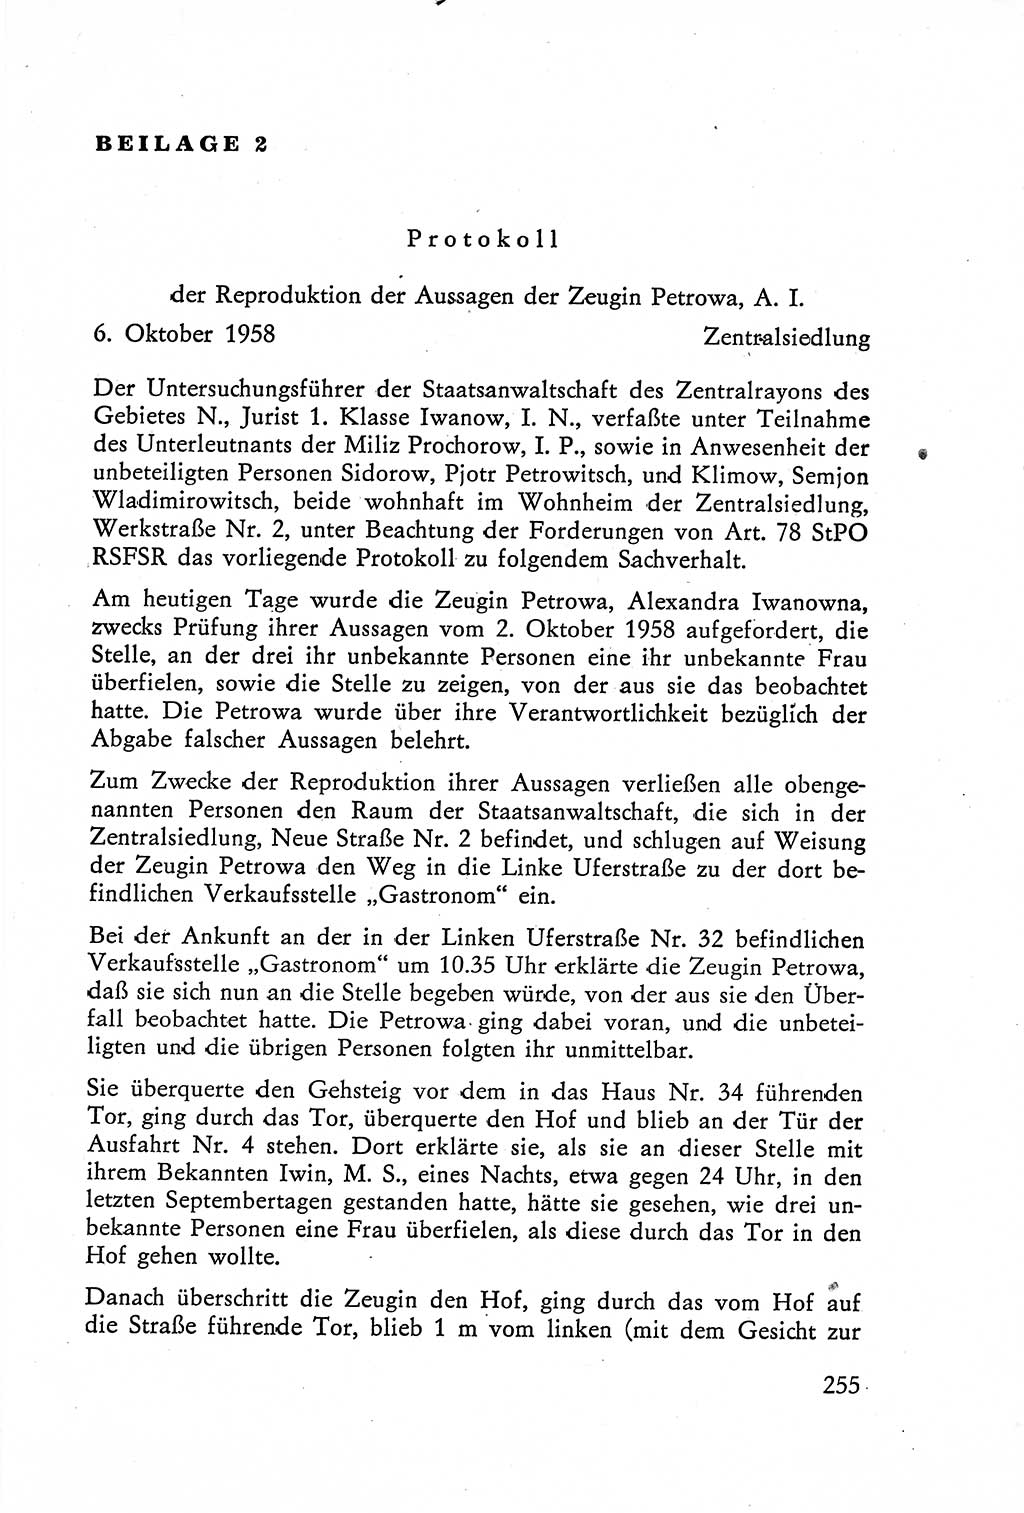 Die Vernehmung [Deutsche Demokratische Republik (DDR)] 1960, Seite 255 (Vern. DDR 1960, S. 255)